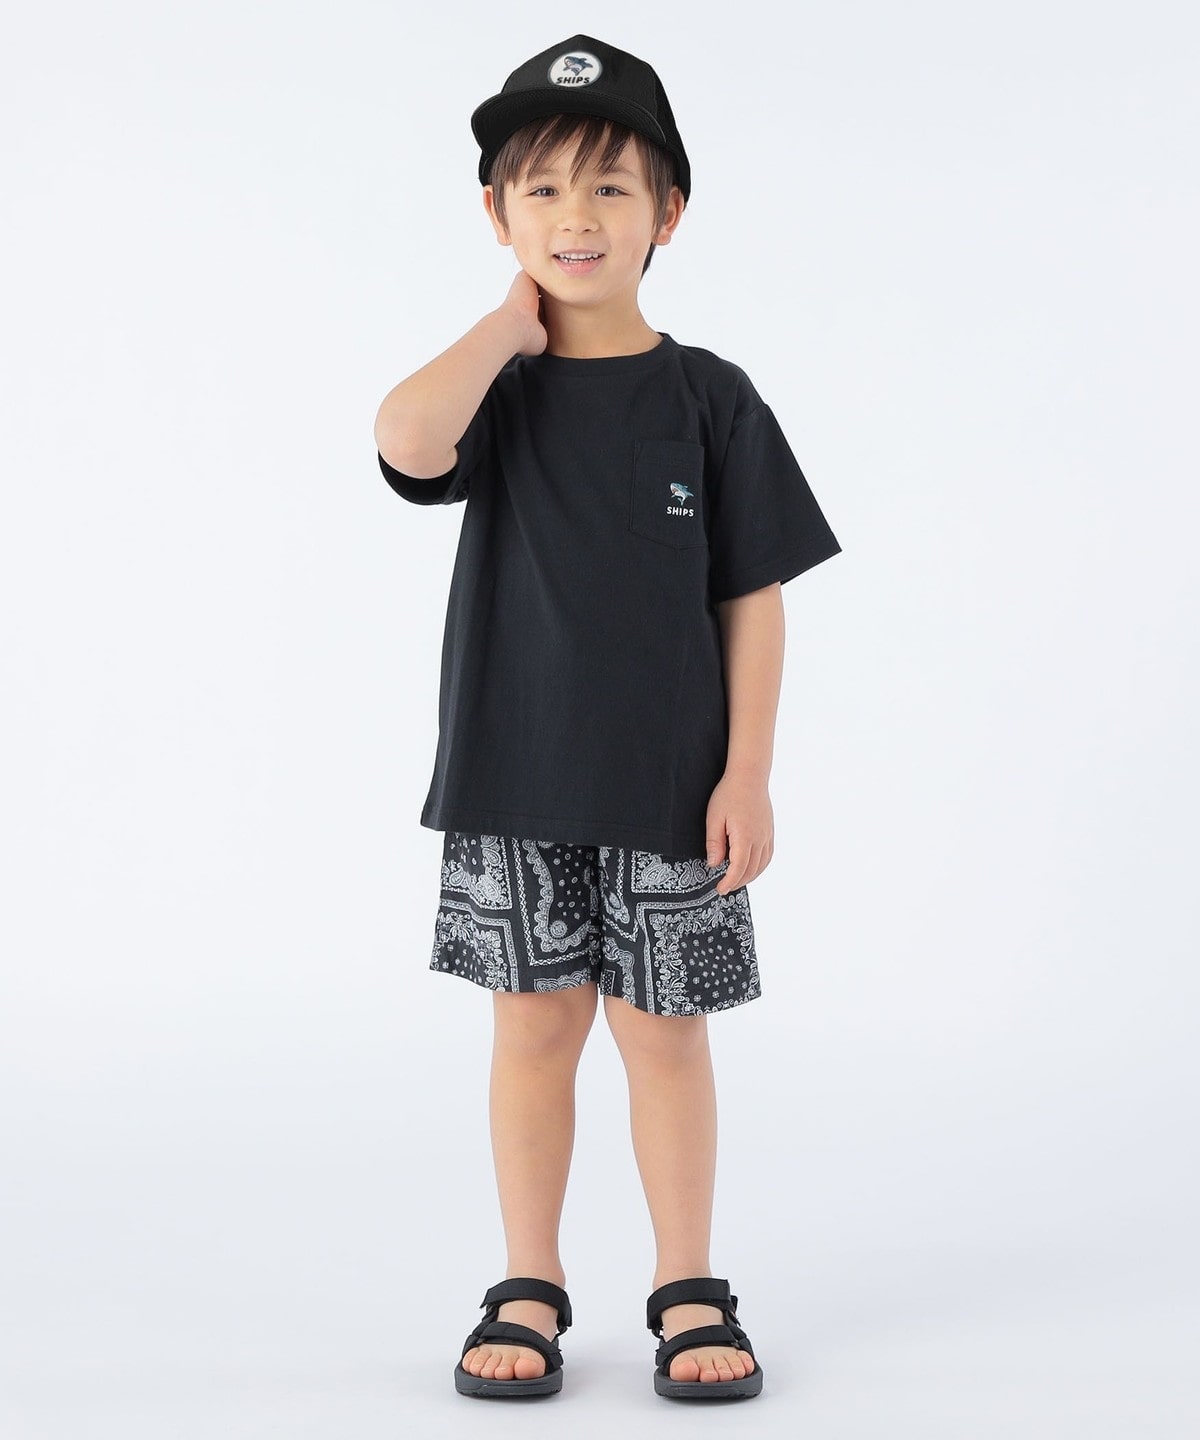 SHIPS KIDS:100～130cm / ワンポイント 刺繍 ポケット TEE: Tシャツ 